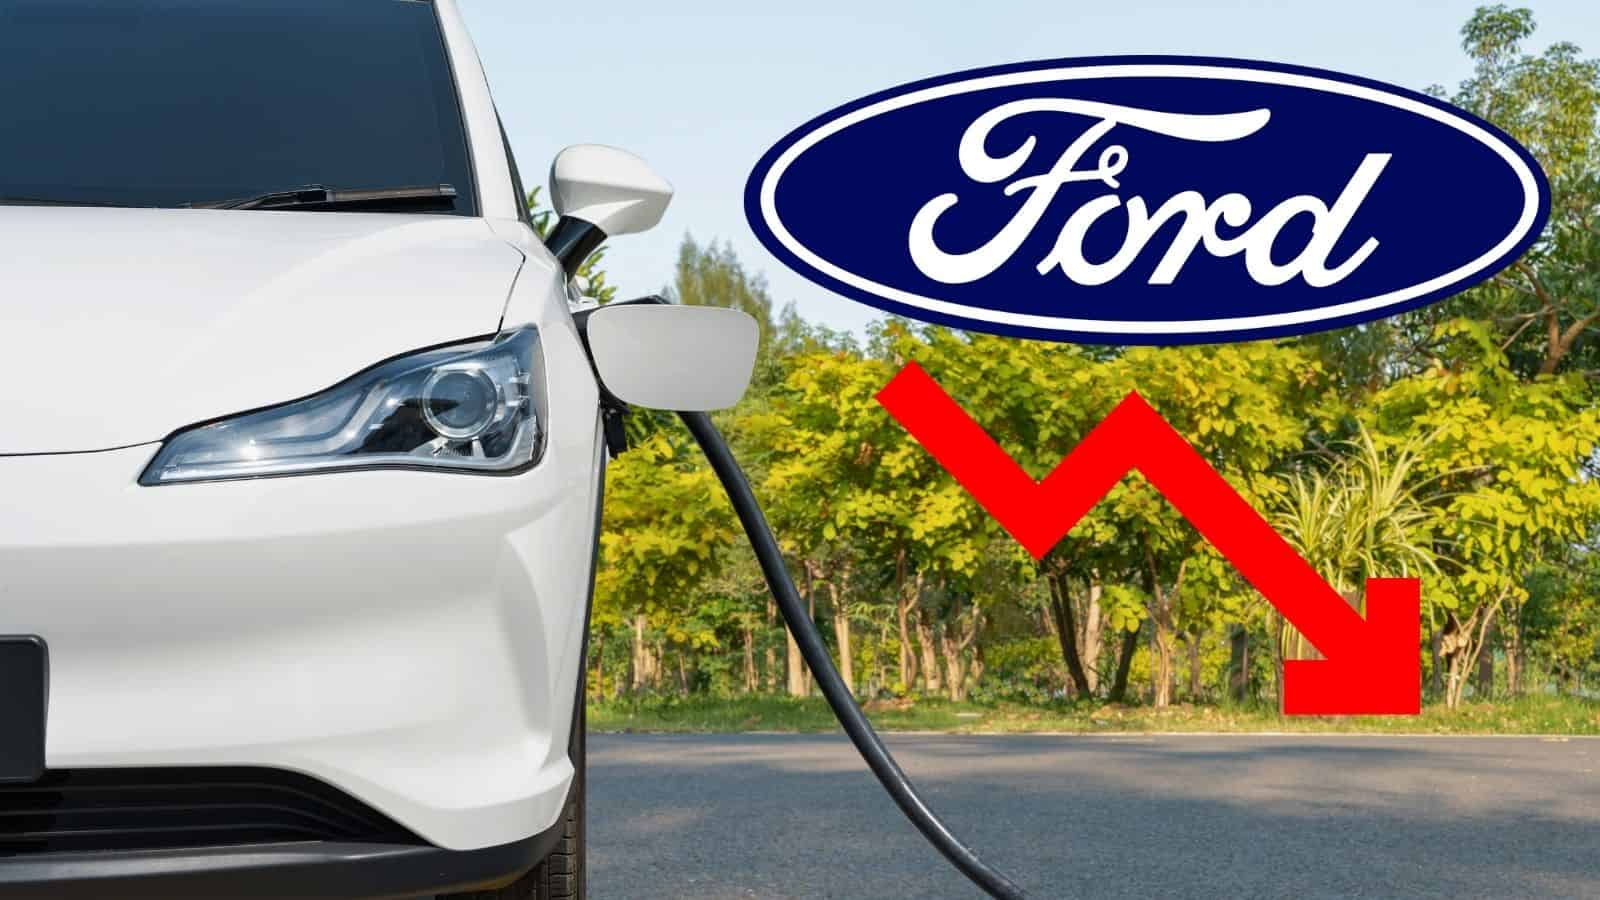 Ford: perde 1,3 miliardi di dollari nella vendita di auto elettriche